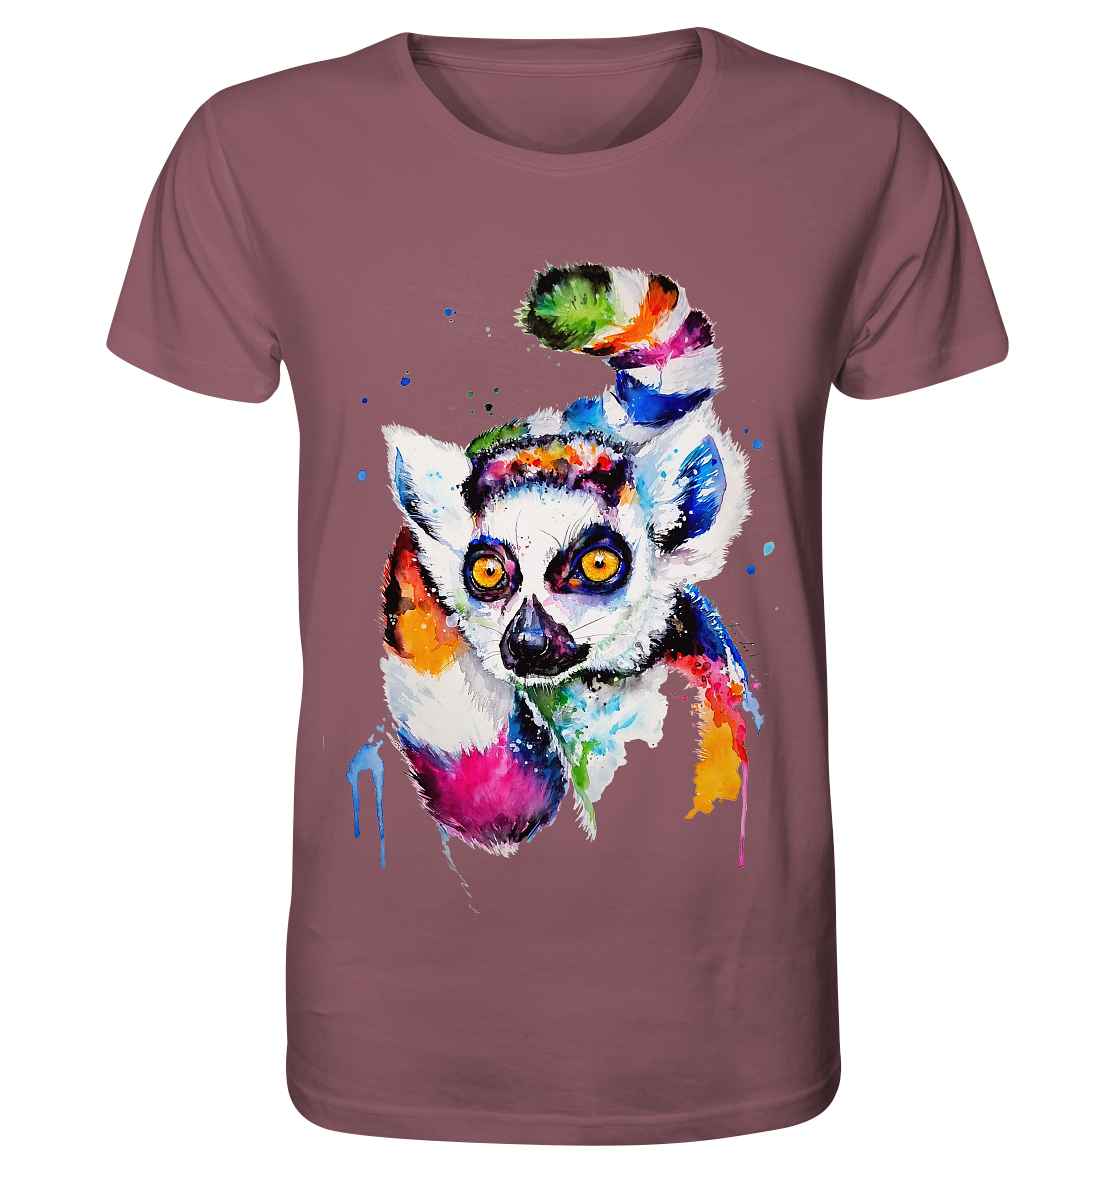 Bunter Katta - Organic Shirt